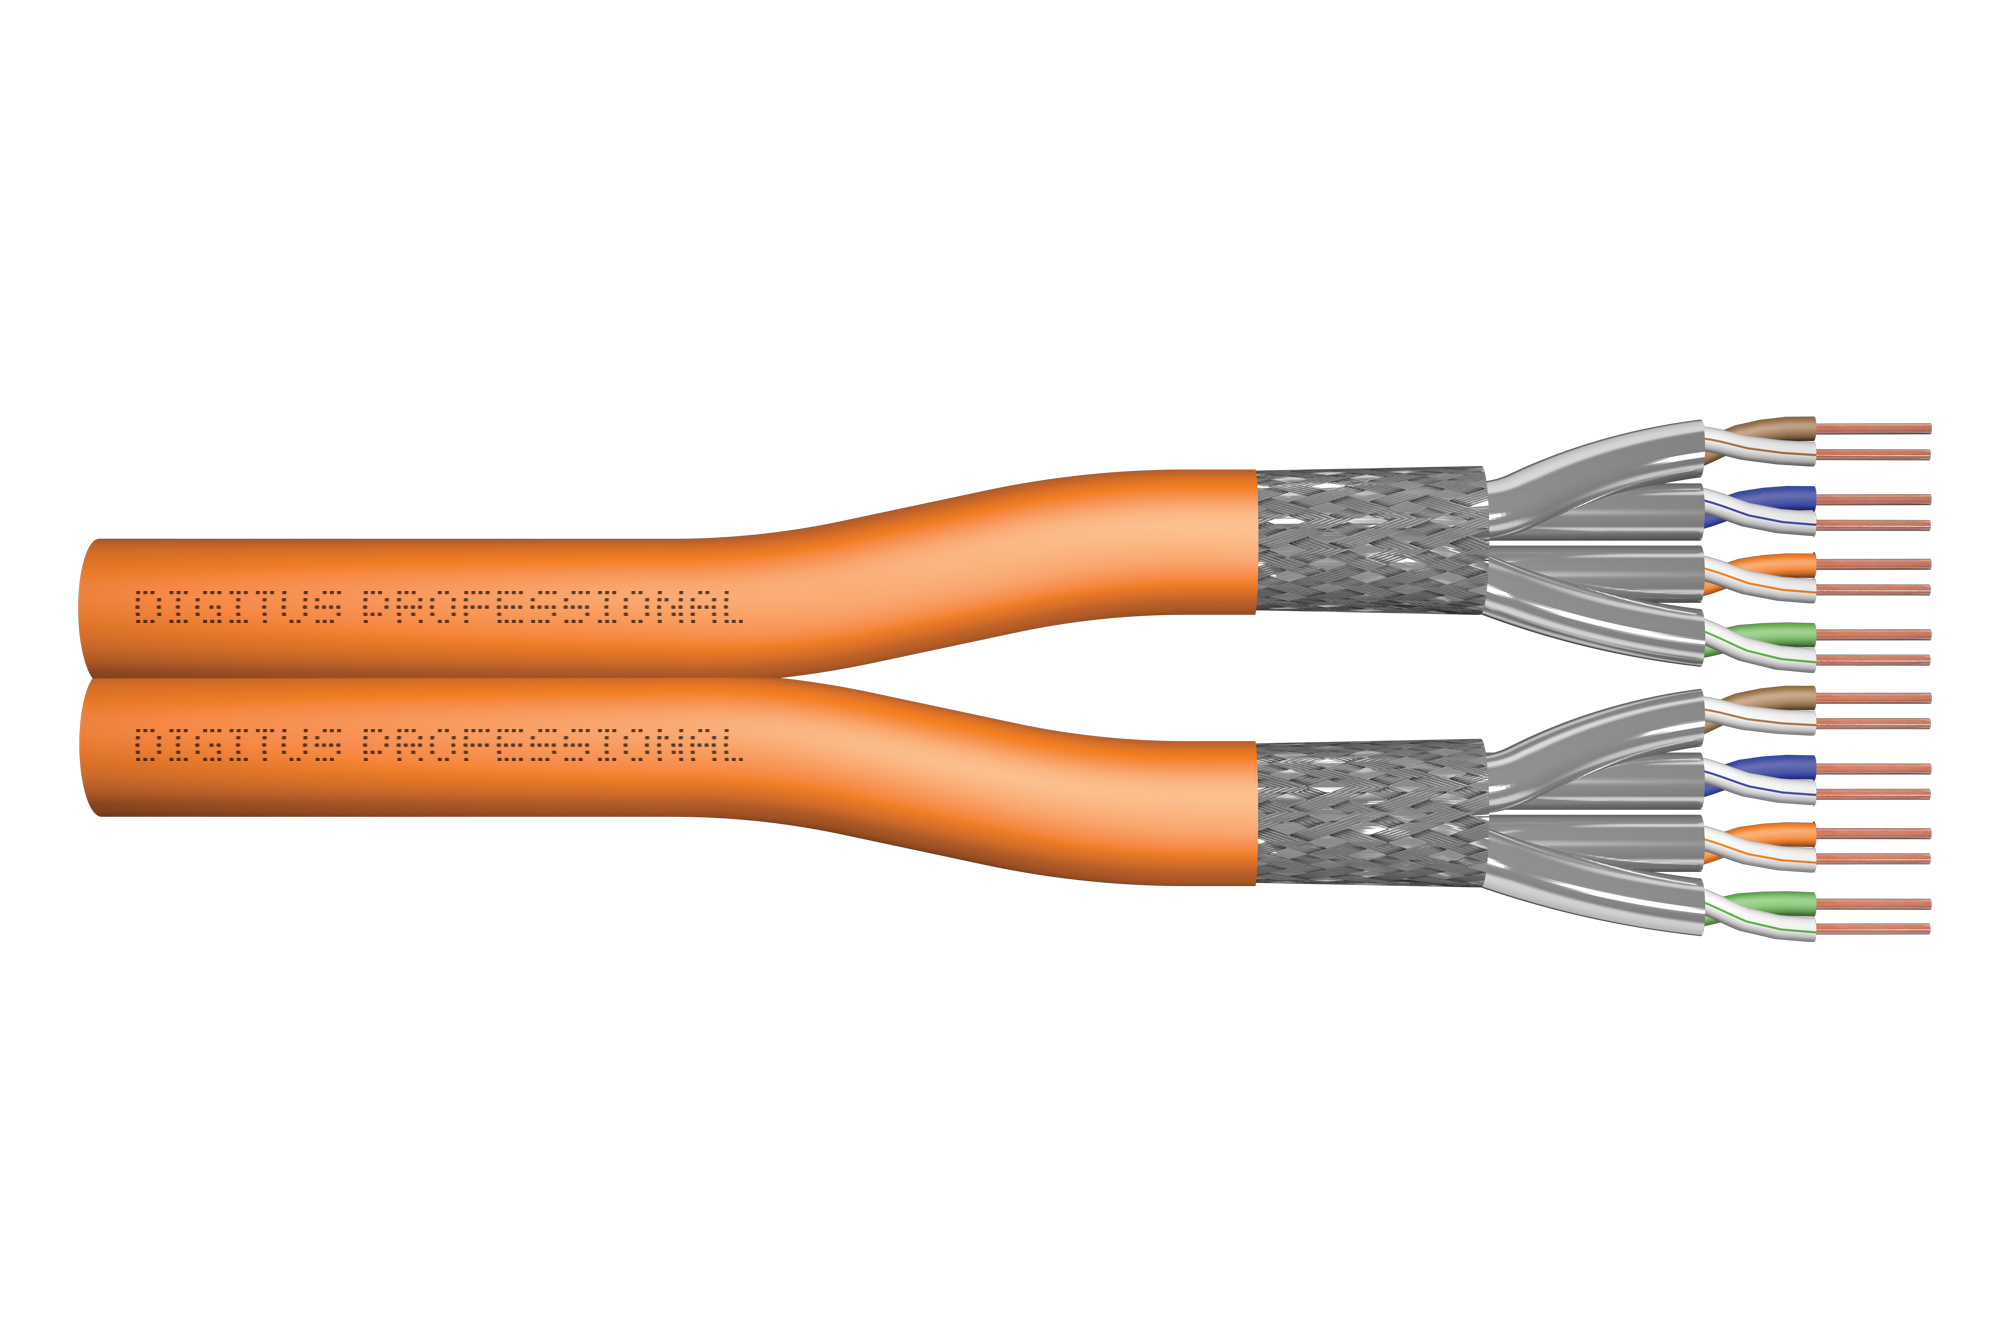 Centraliseren Beyond Vergelijkbaar DIGITUS by ASSMANN Shop | Cat.7 S/FTP installation cable, 500 m, duplex,  Dca-s1a d1 a1